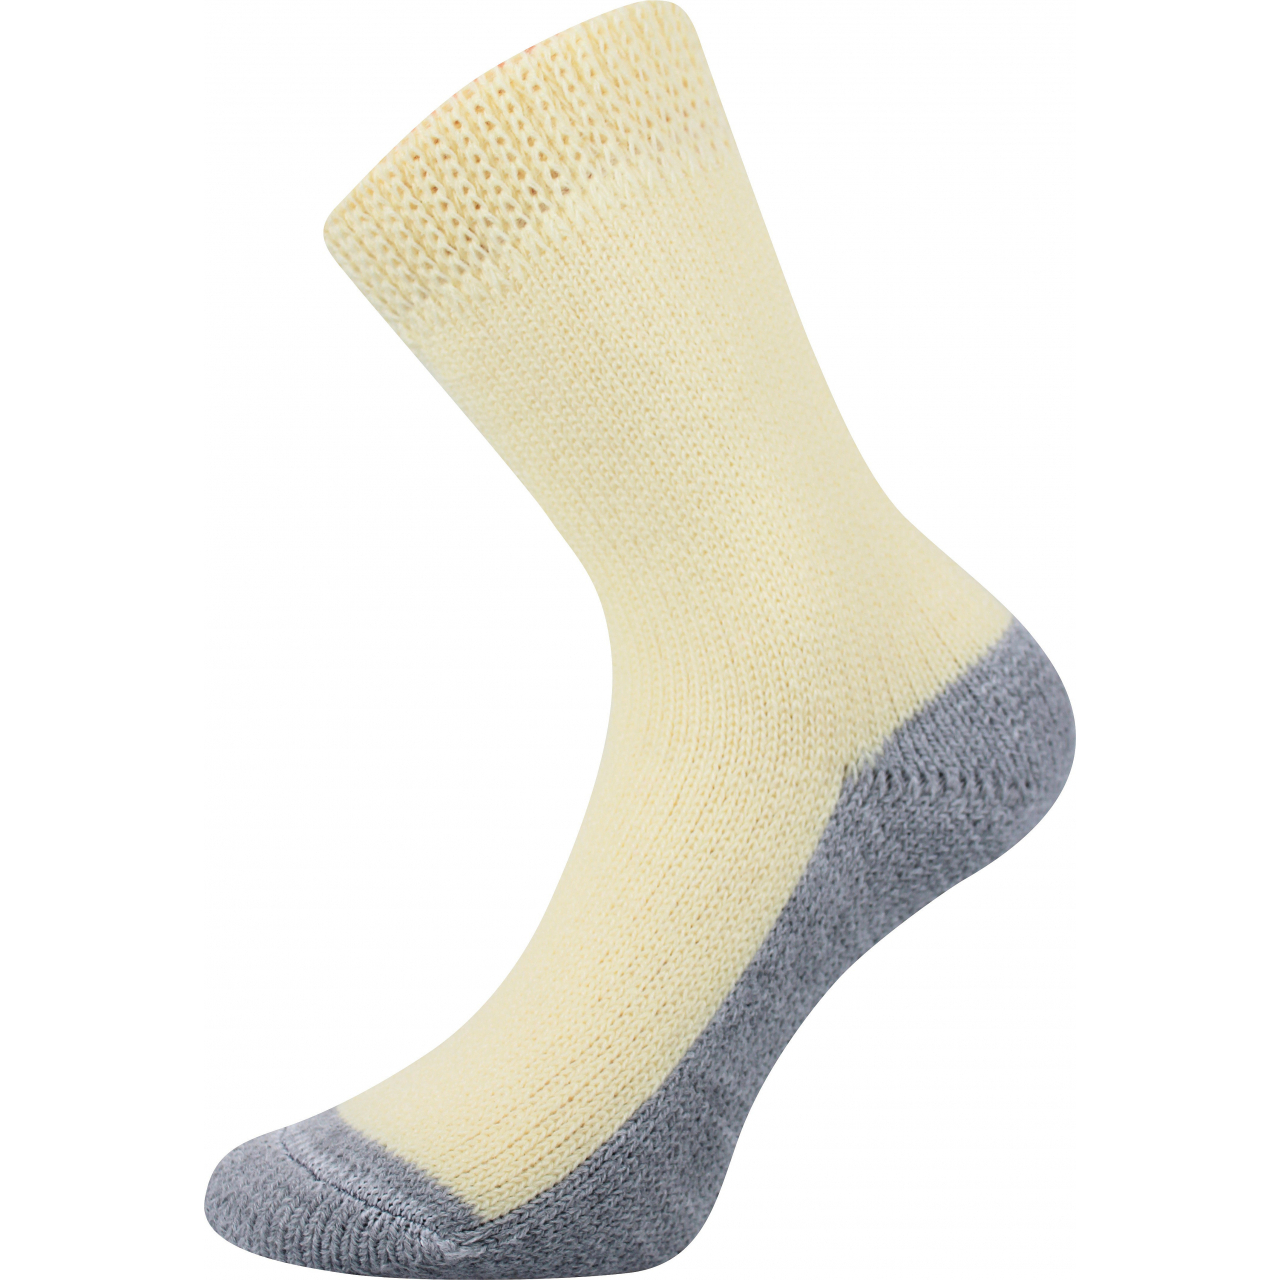 Ponožky unisex Boma Spací - žluté, 39-42